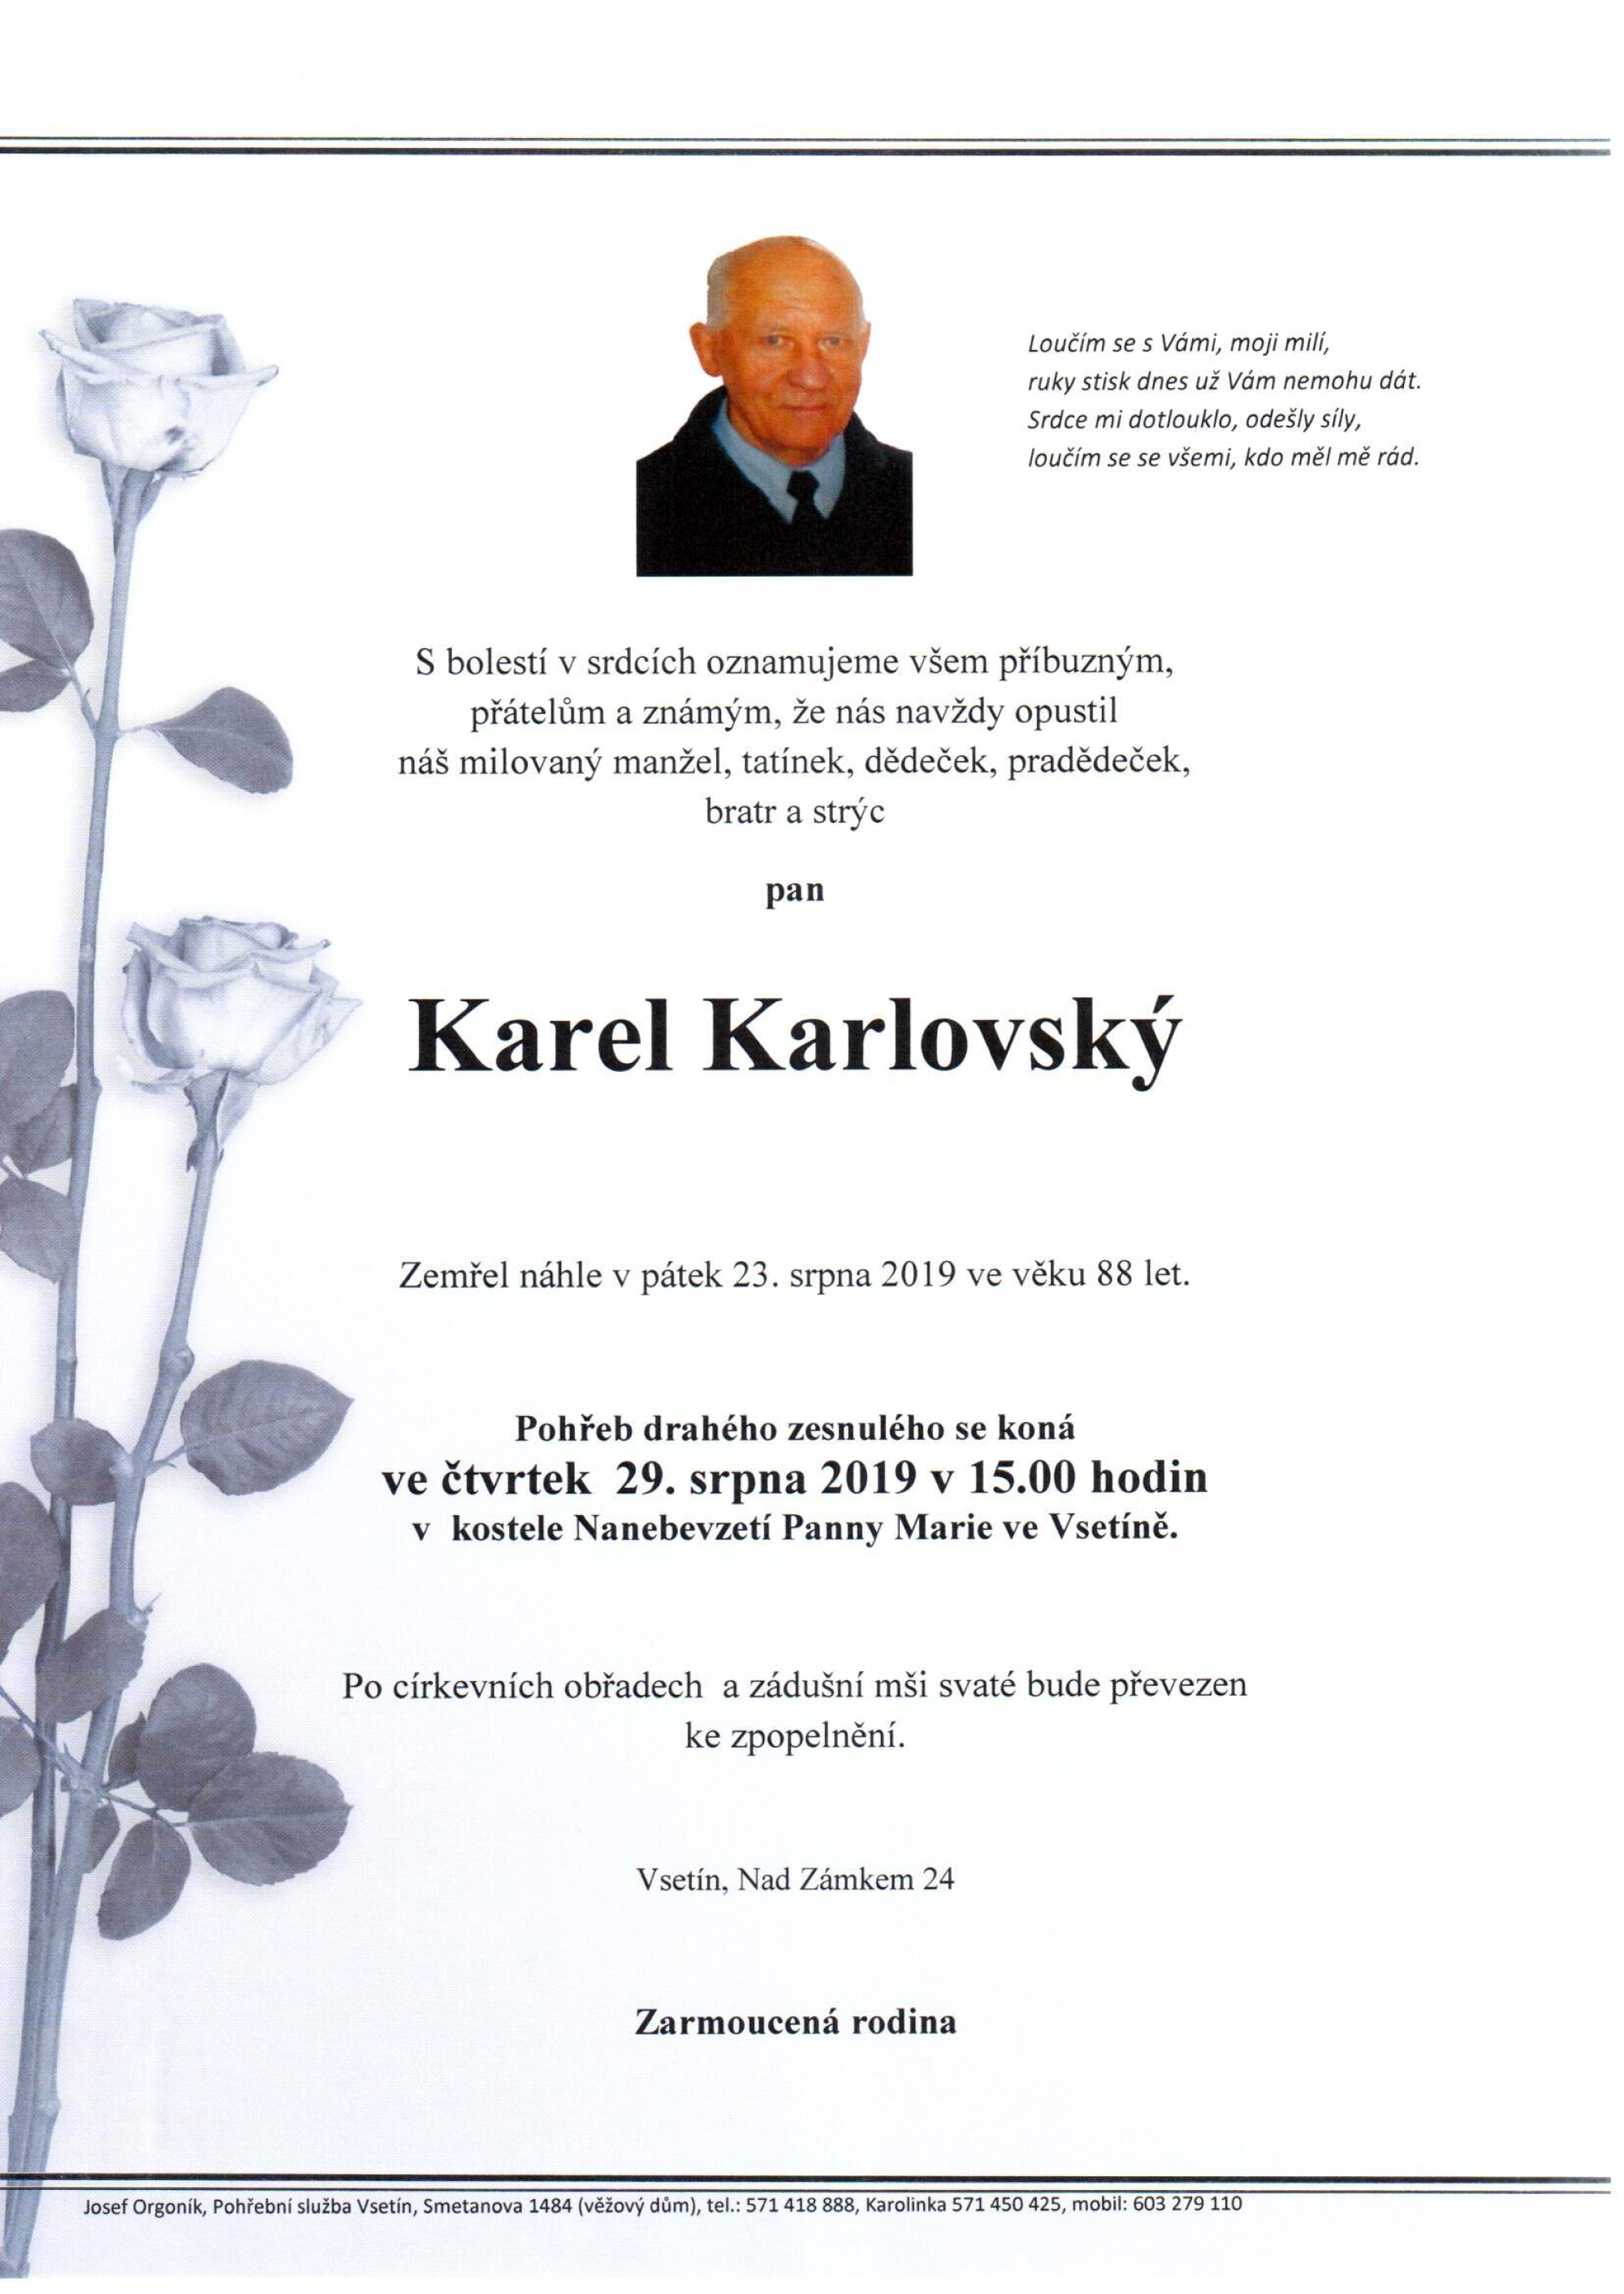 Karel Karlovský